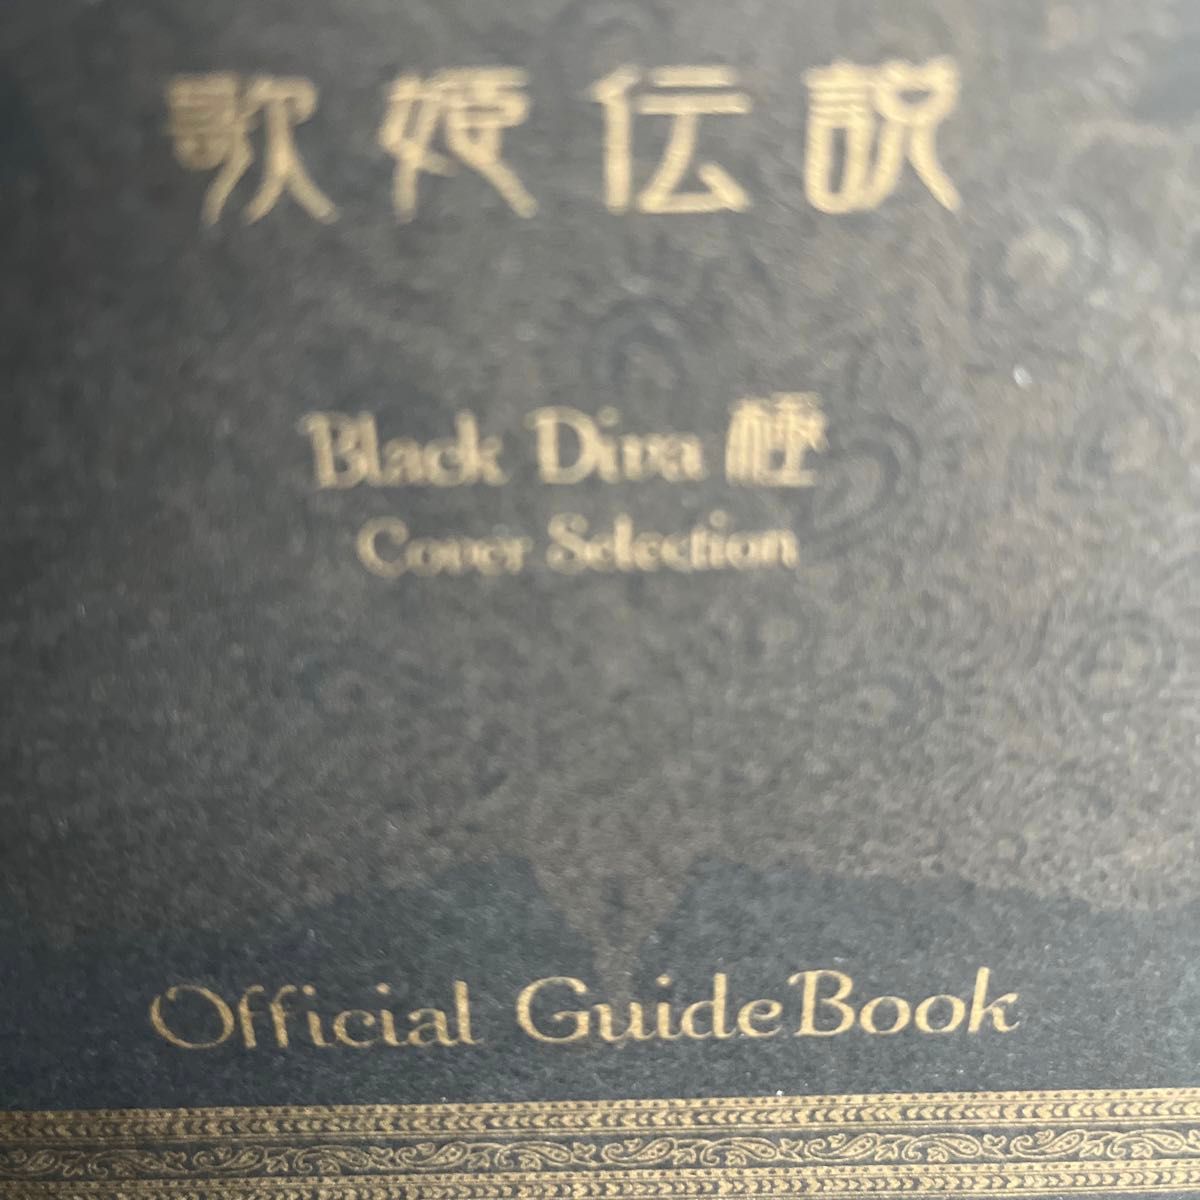 中森明菜　パチスロ（歌姫伝説〜BLACK DIVA〜）オフィシャルガイドブック2種類